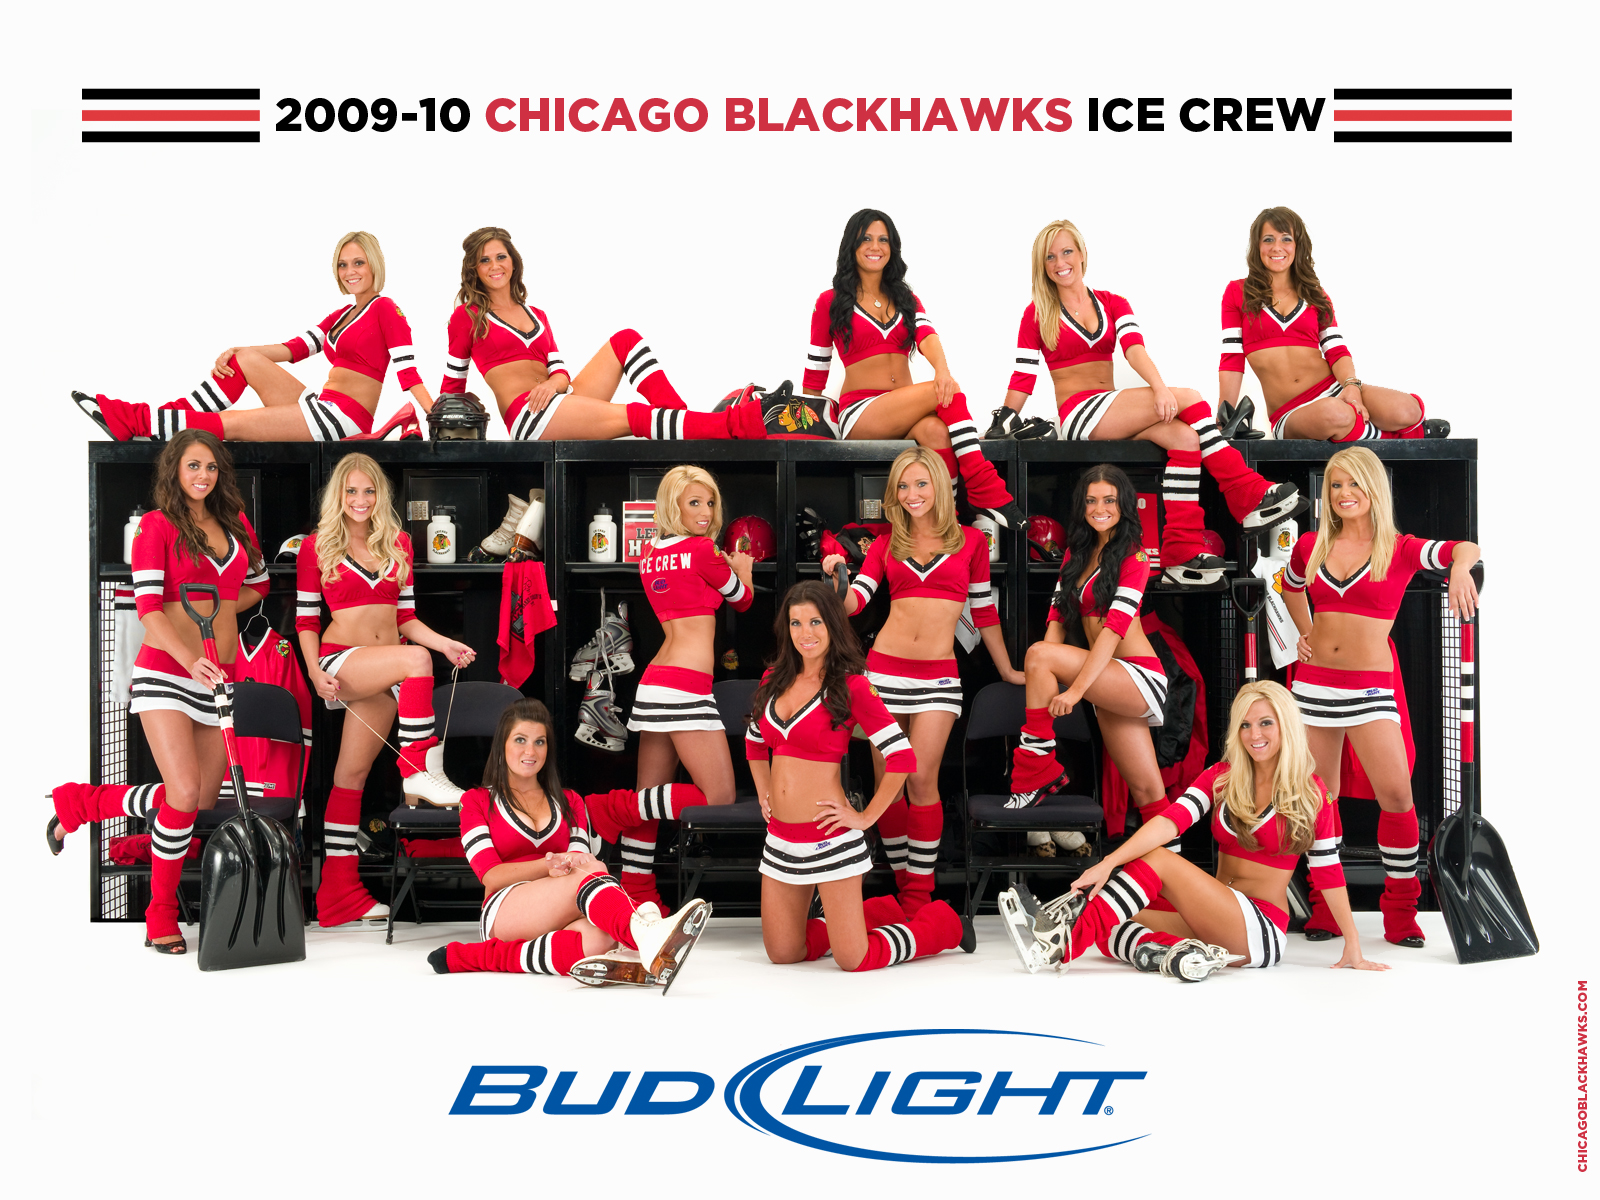 Chicago Blackhawks Ice Girls Wallpaper On